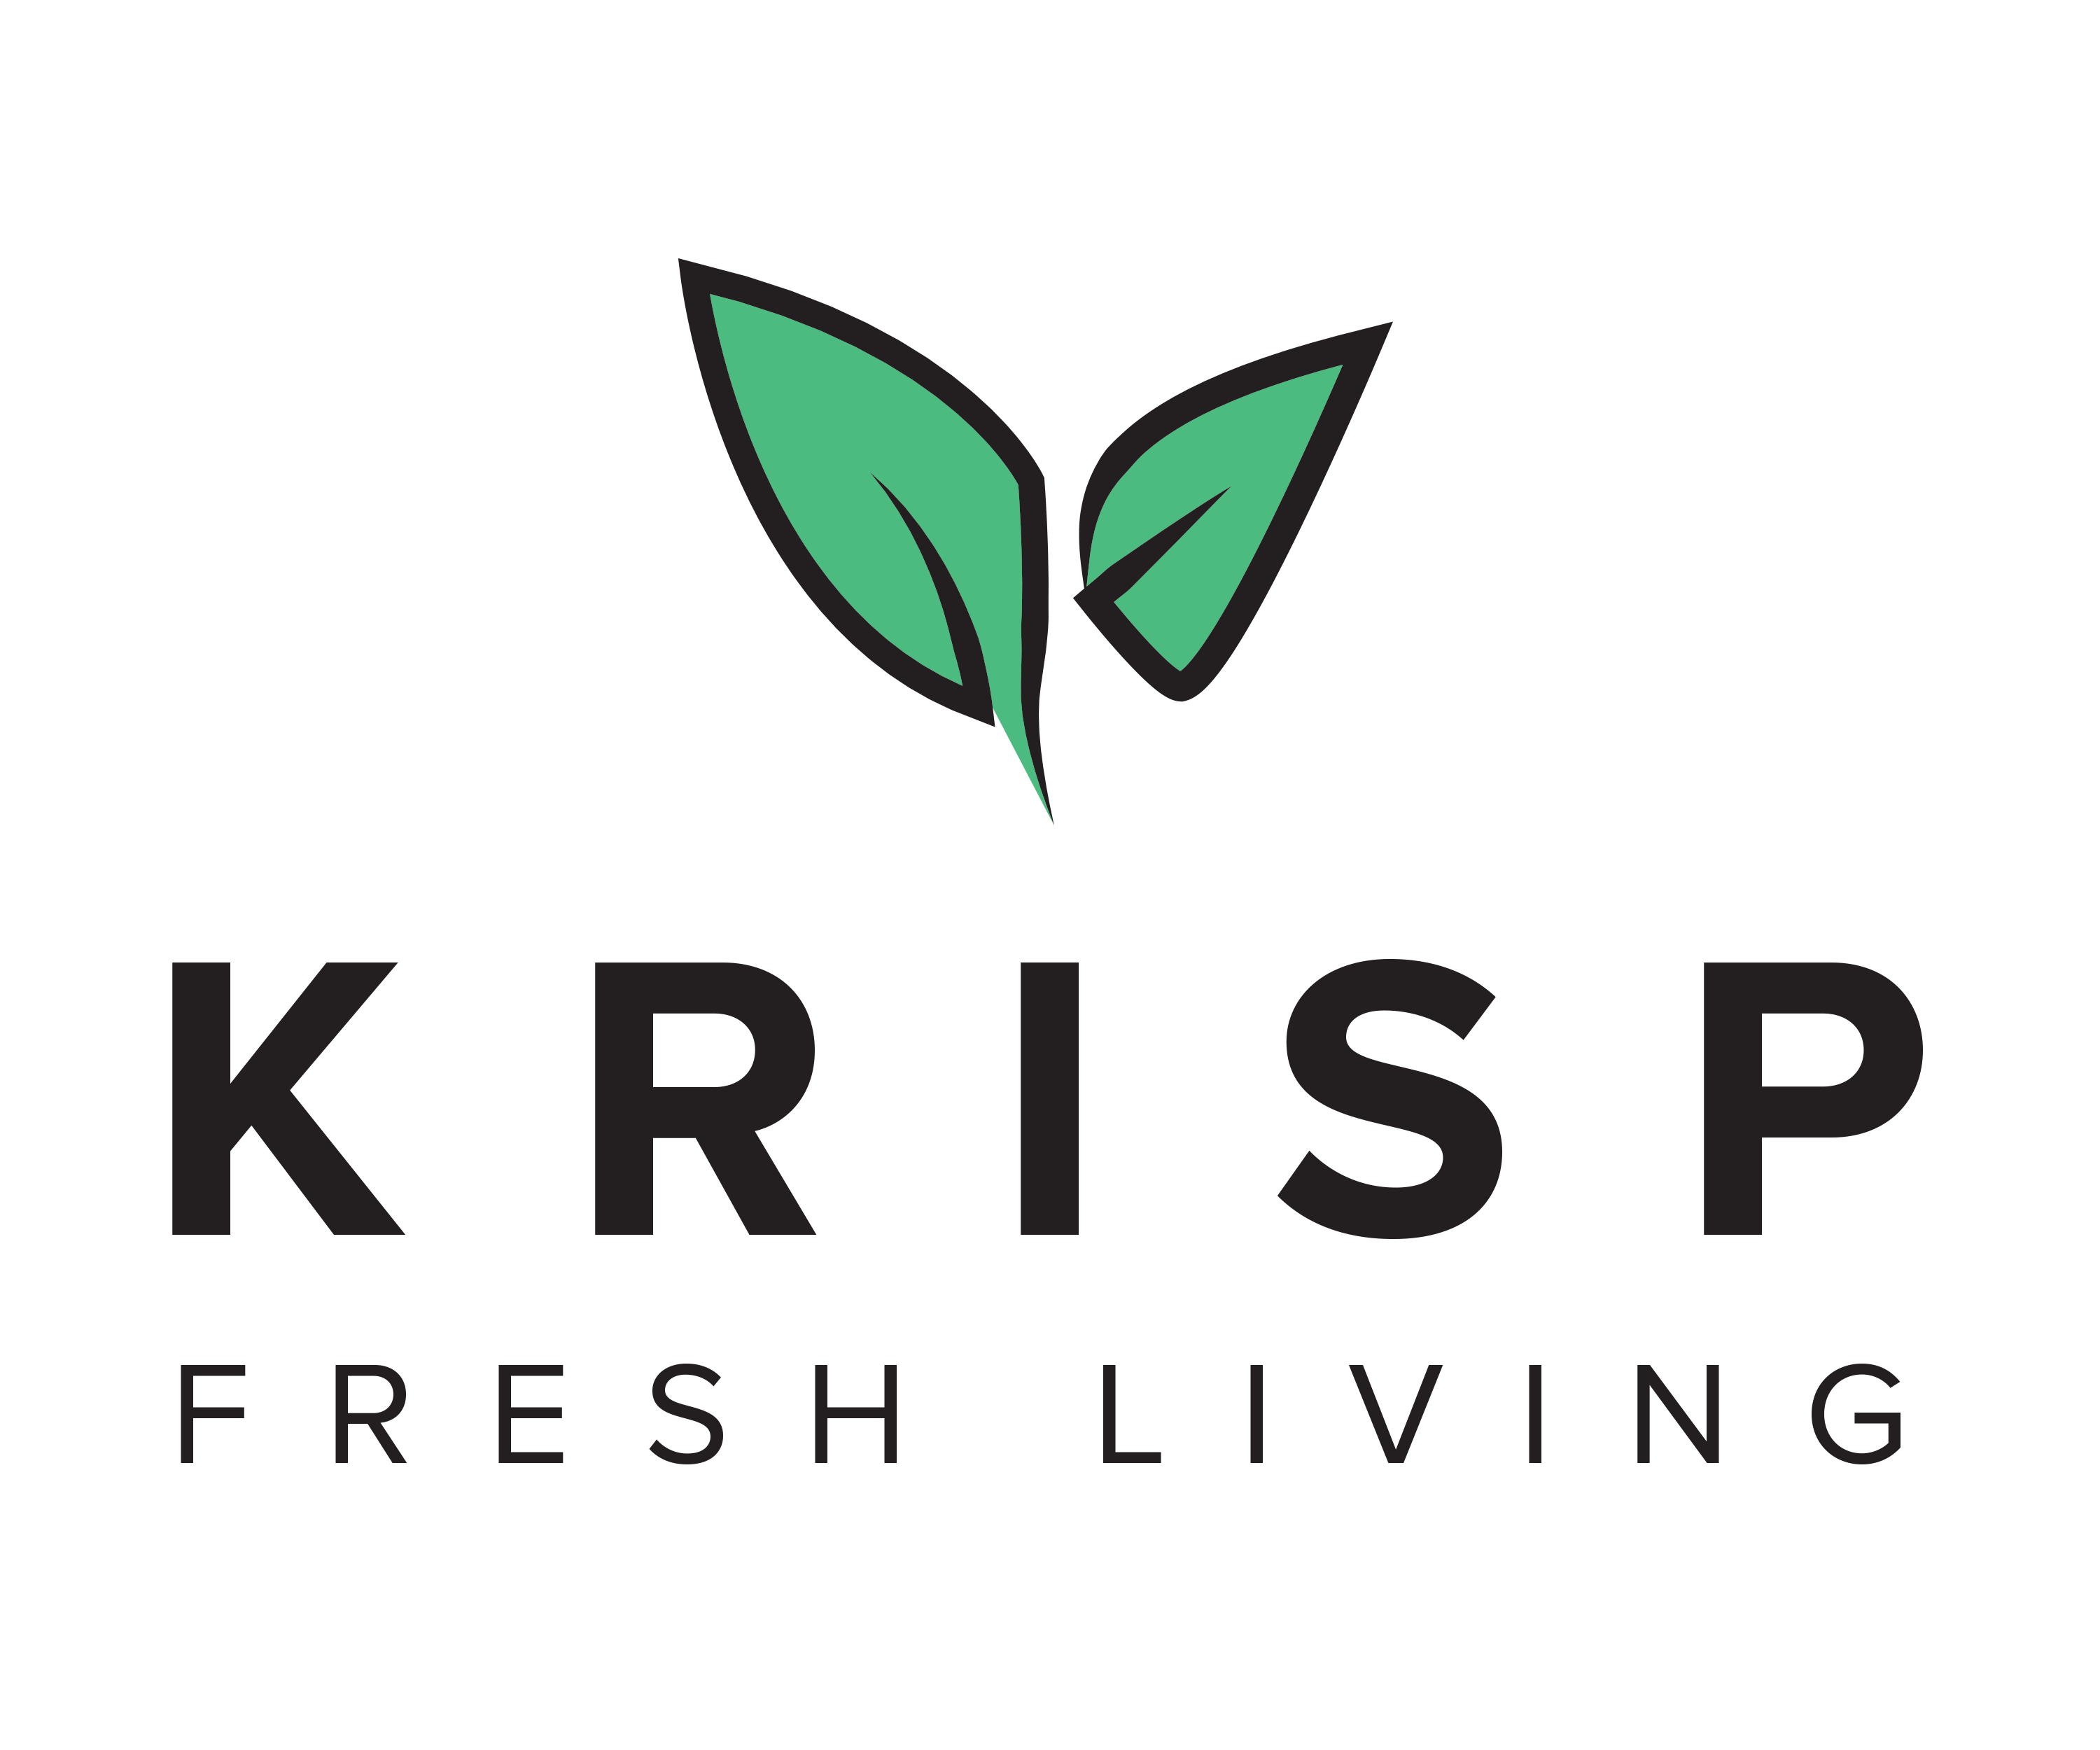 KRISP Fresh Living 2272 Michelson Dr #100